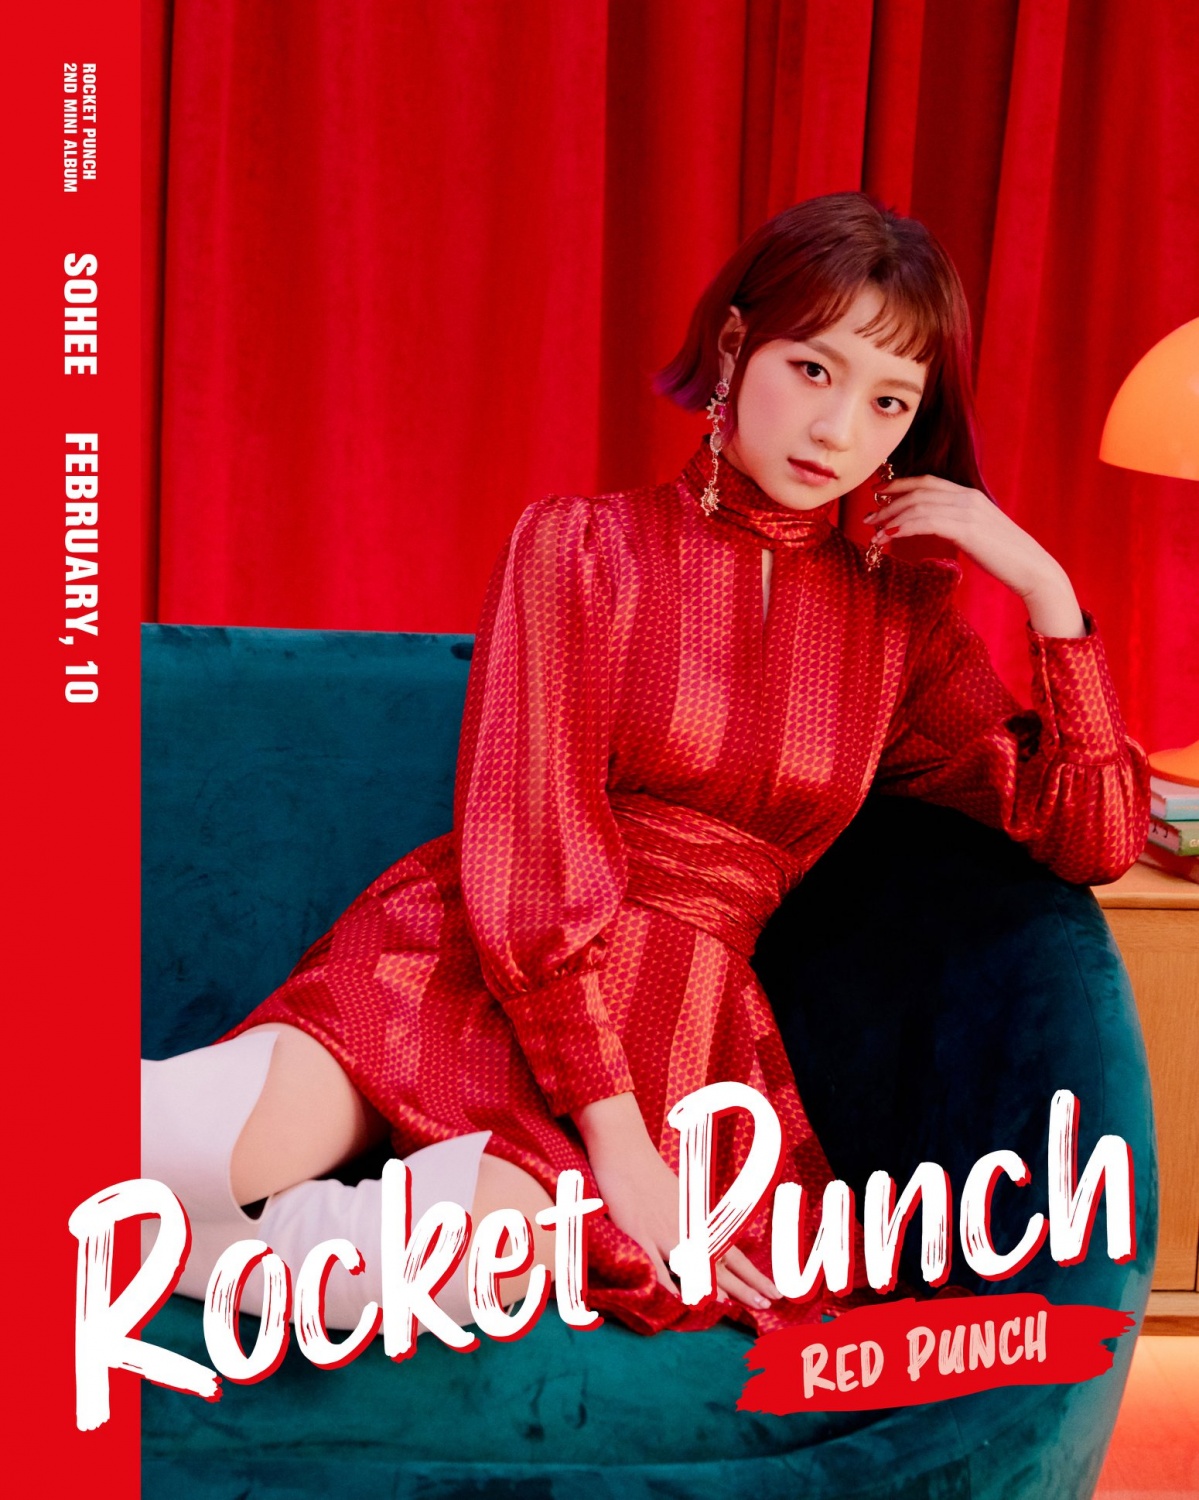 Rocket Punch Unveils Personal Concept Photos